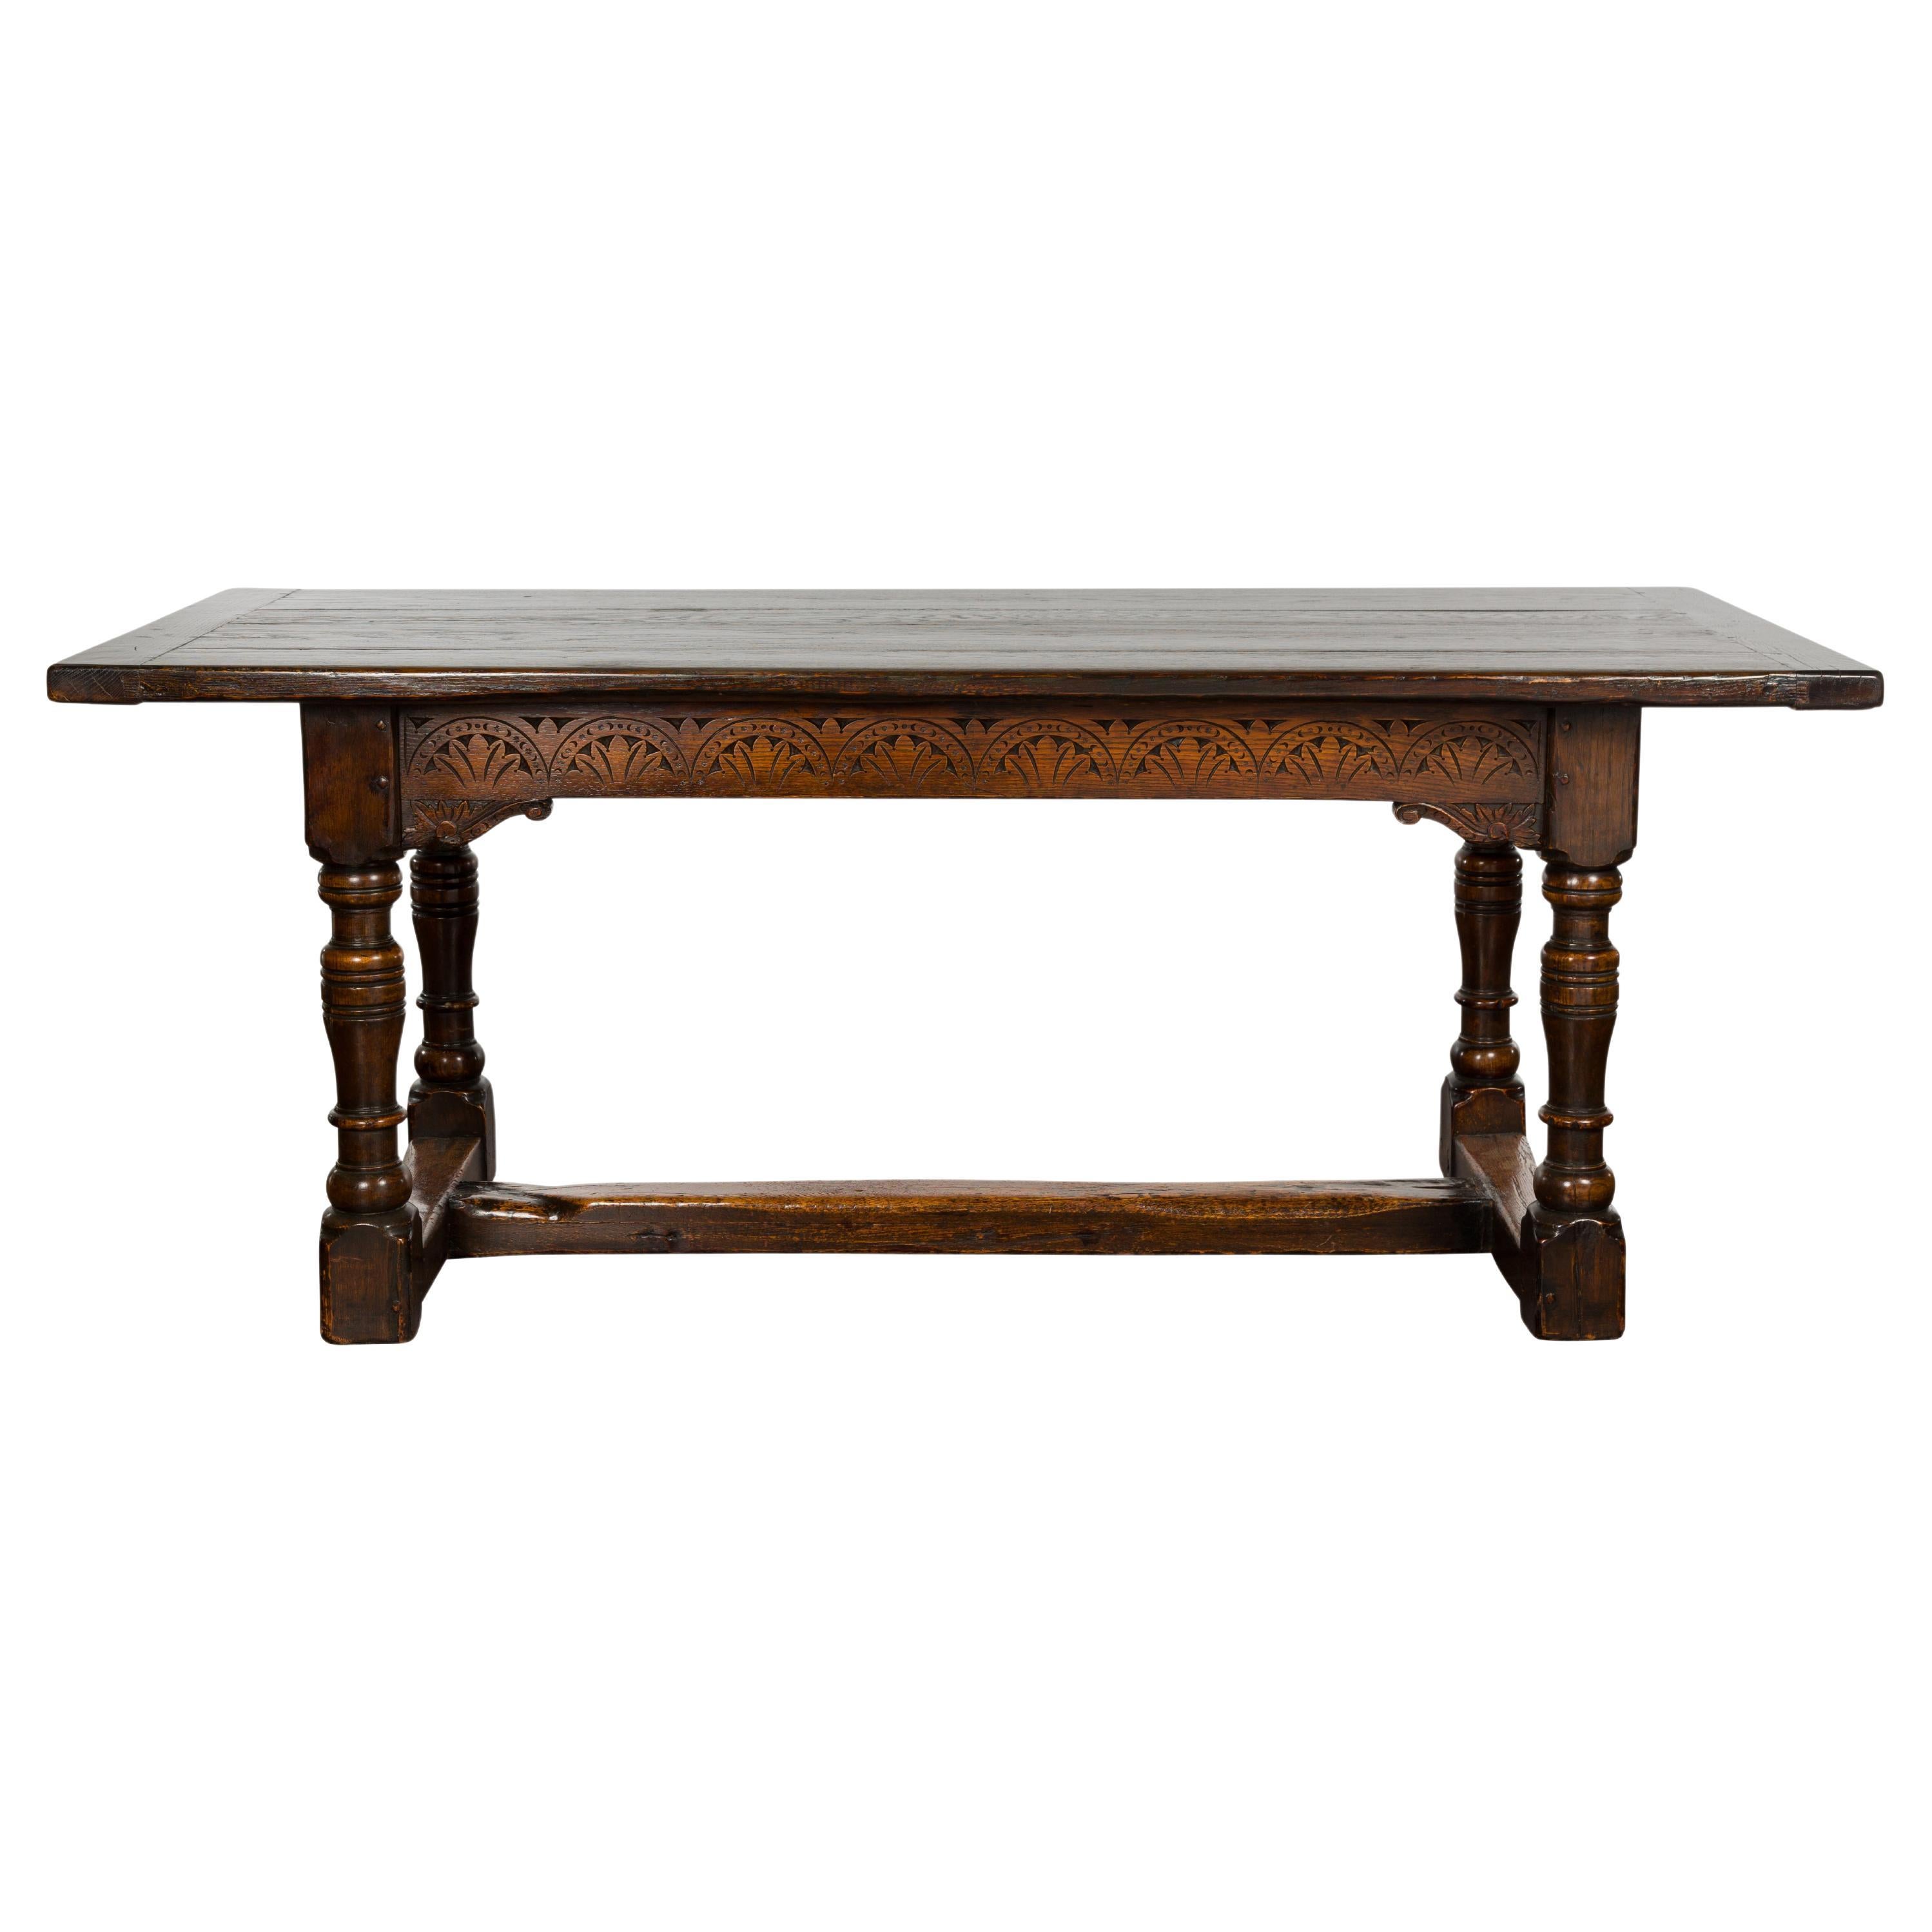 Table en chêne anglais du 19ème siècle avec tablier sculpté et pieds tournés